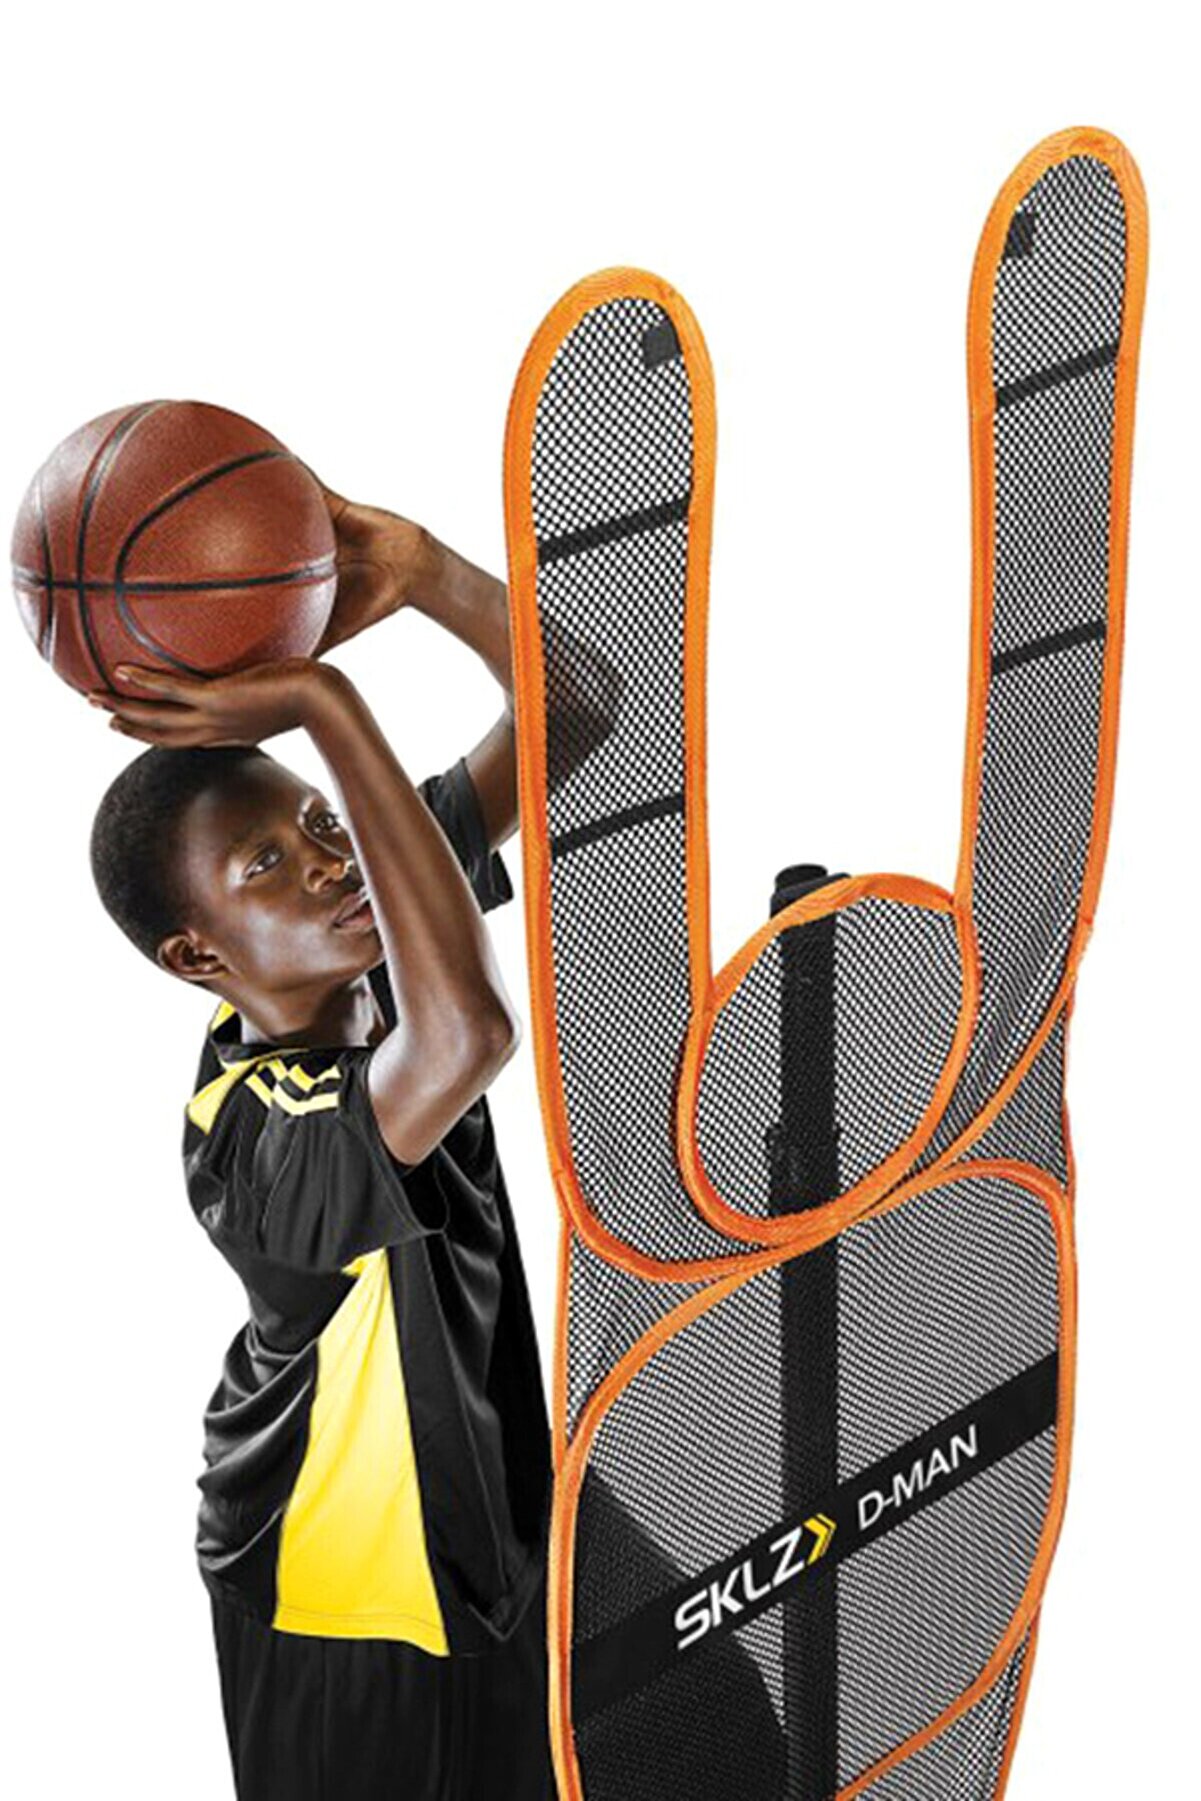 SKLZ D-man Basketball - Eller Yukarıda Defans Antrenmanı